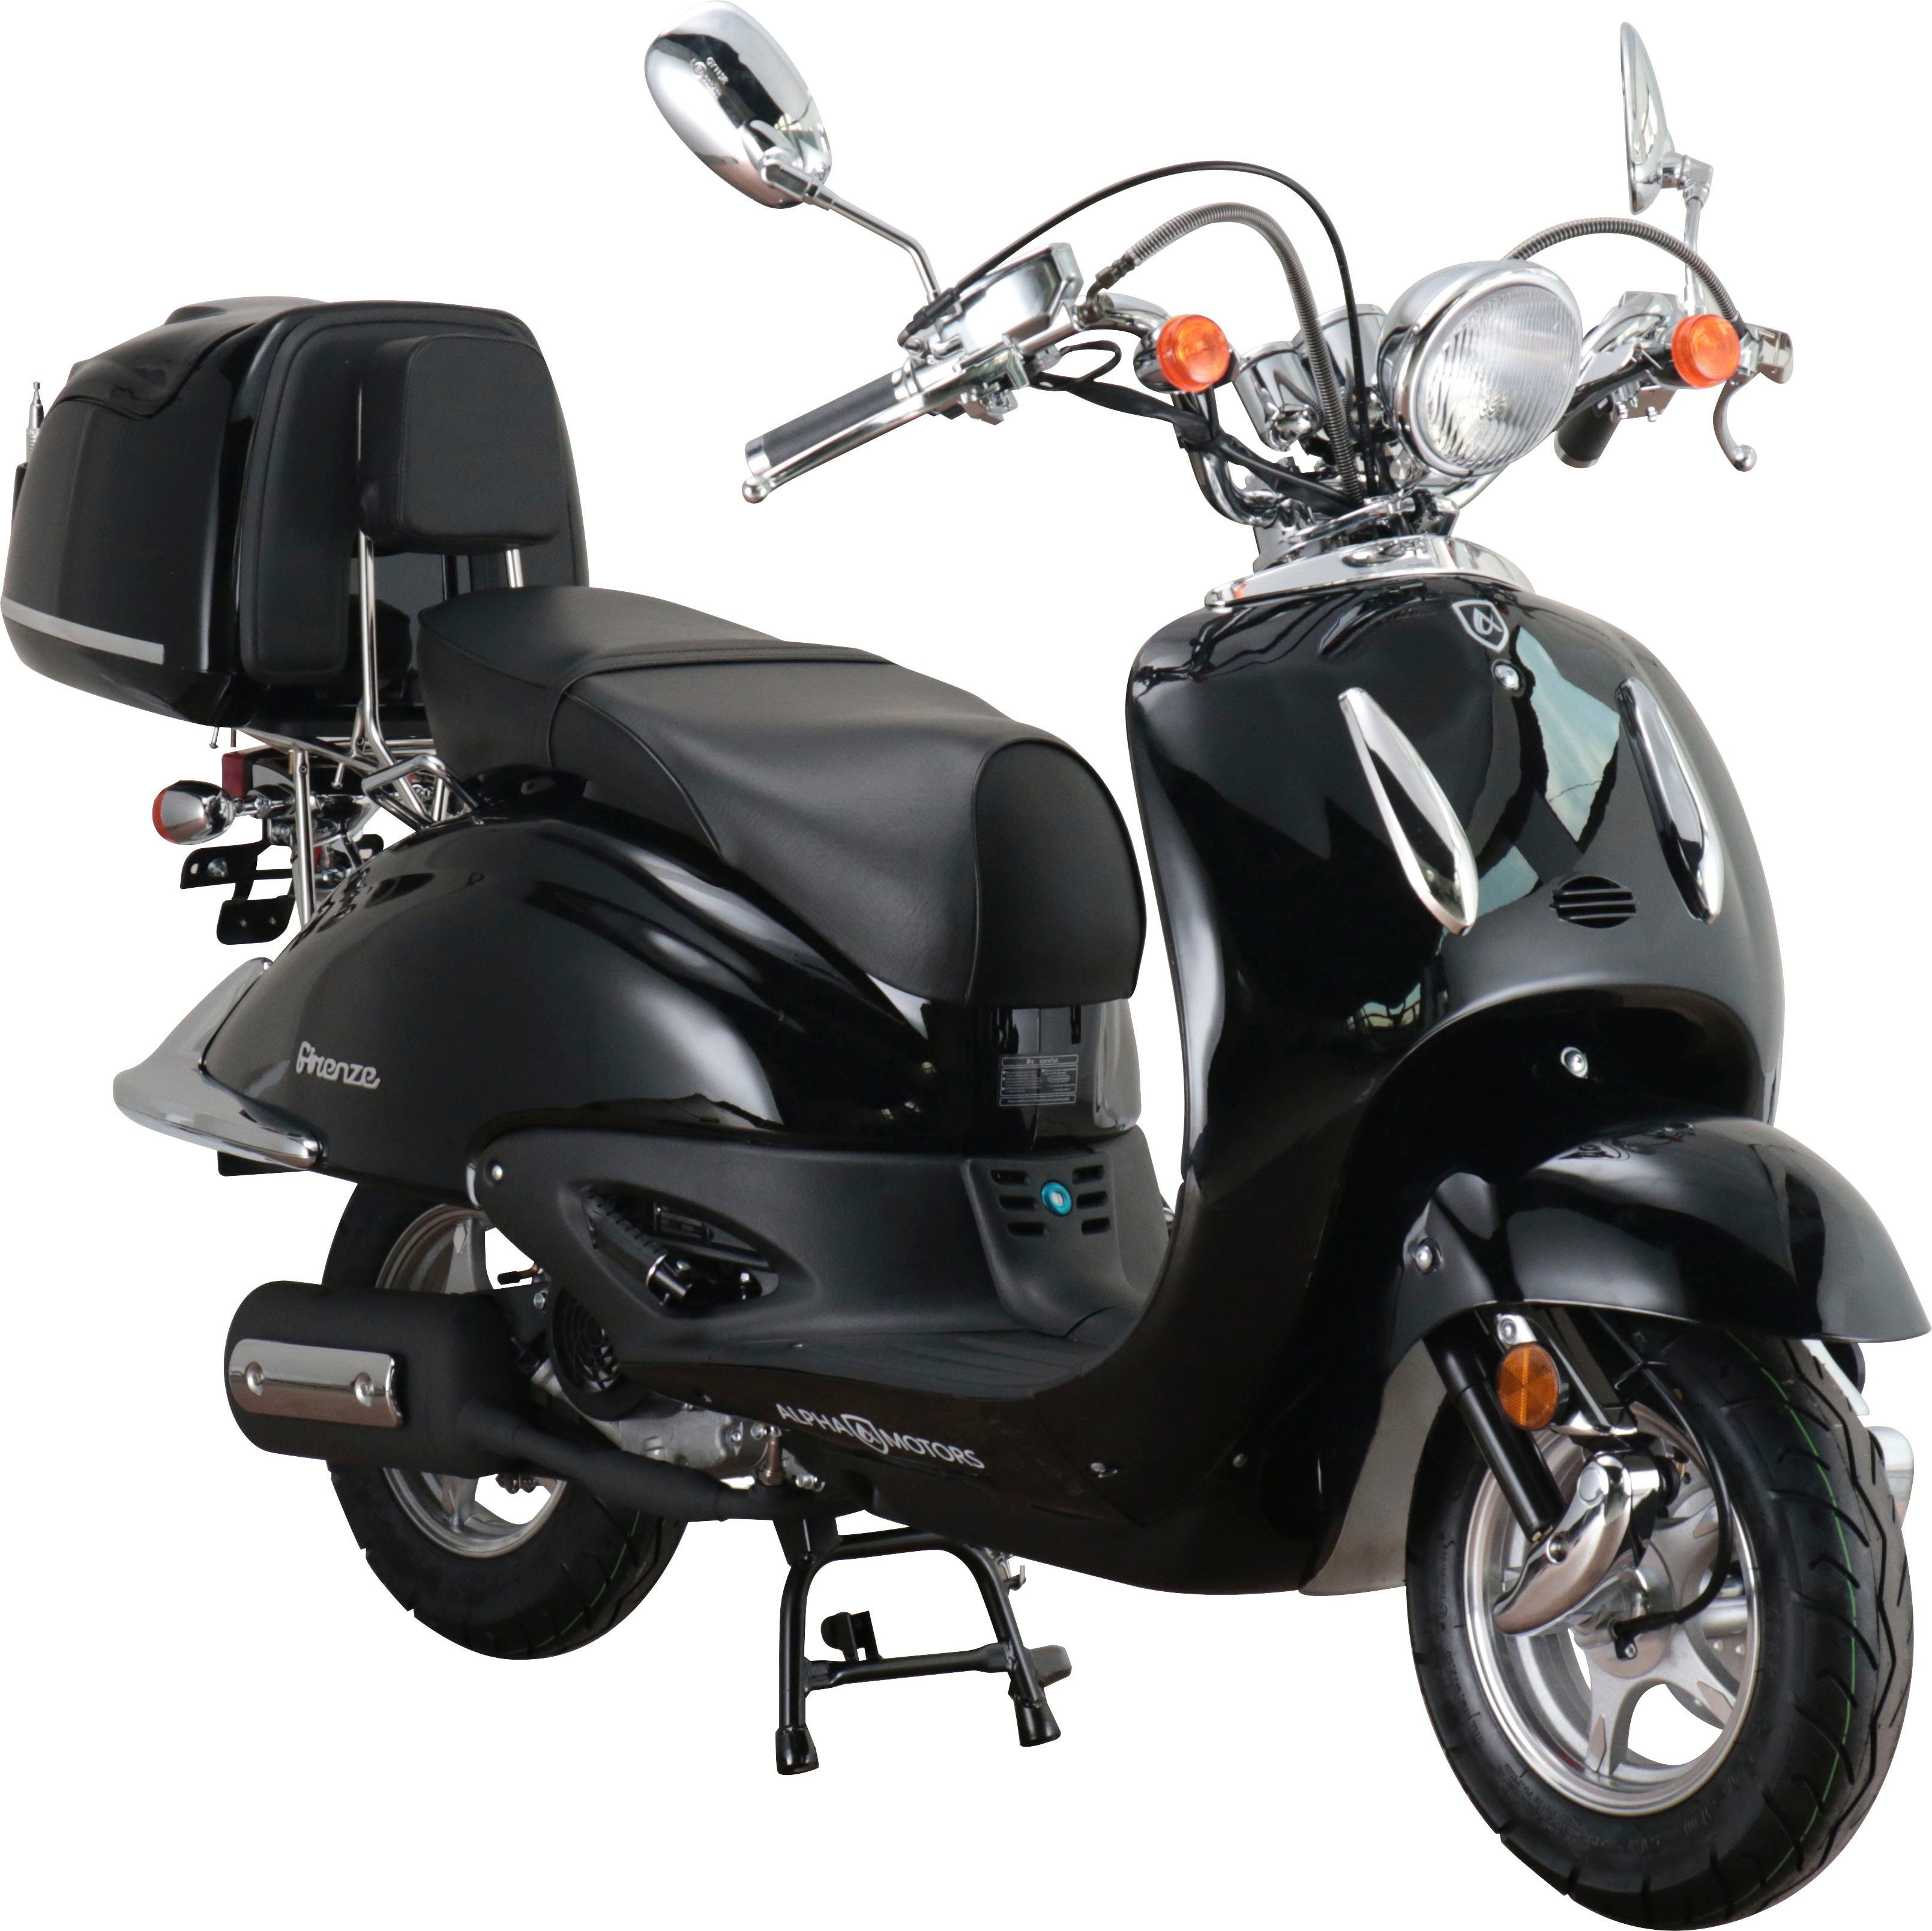 Alpha Motors Motorroller Retro Firenze, 50 ccm, 45 km/h, Euro 5, inkl. Topcase | Motorroller